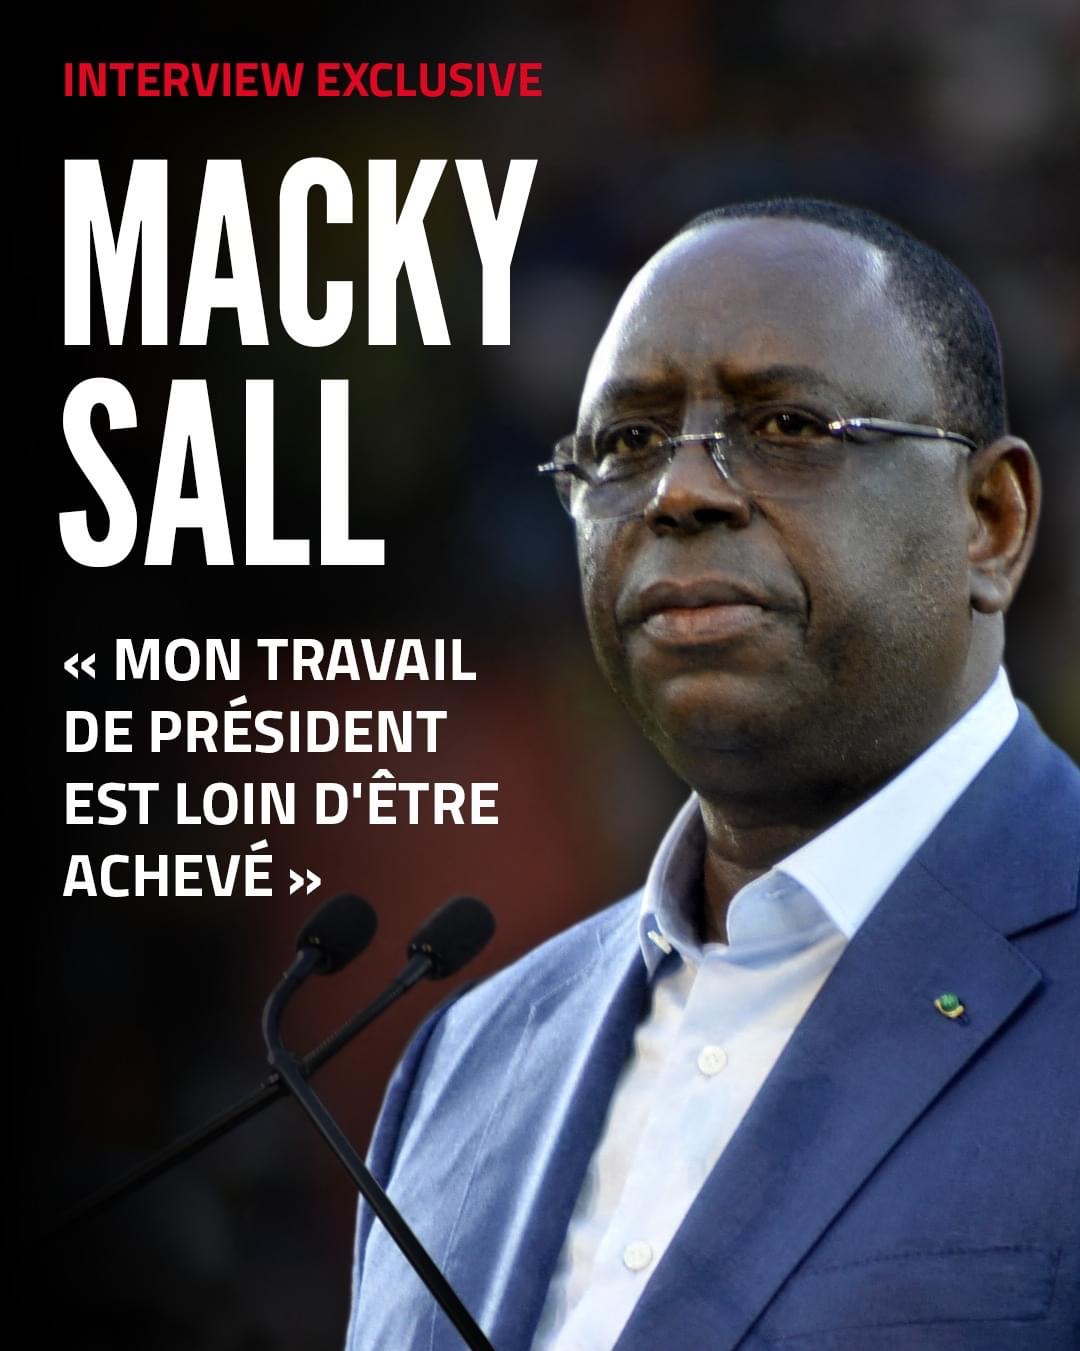 « Mon travail de Président est loin d’être achevé »: Macky Sall soulève encore la polémique sur le 3e mandat